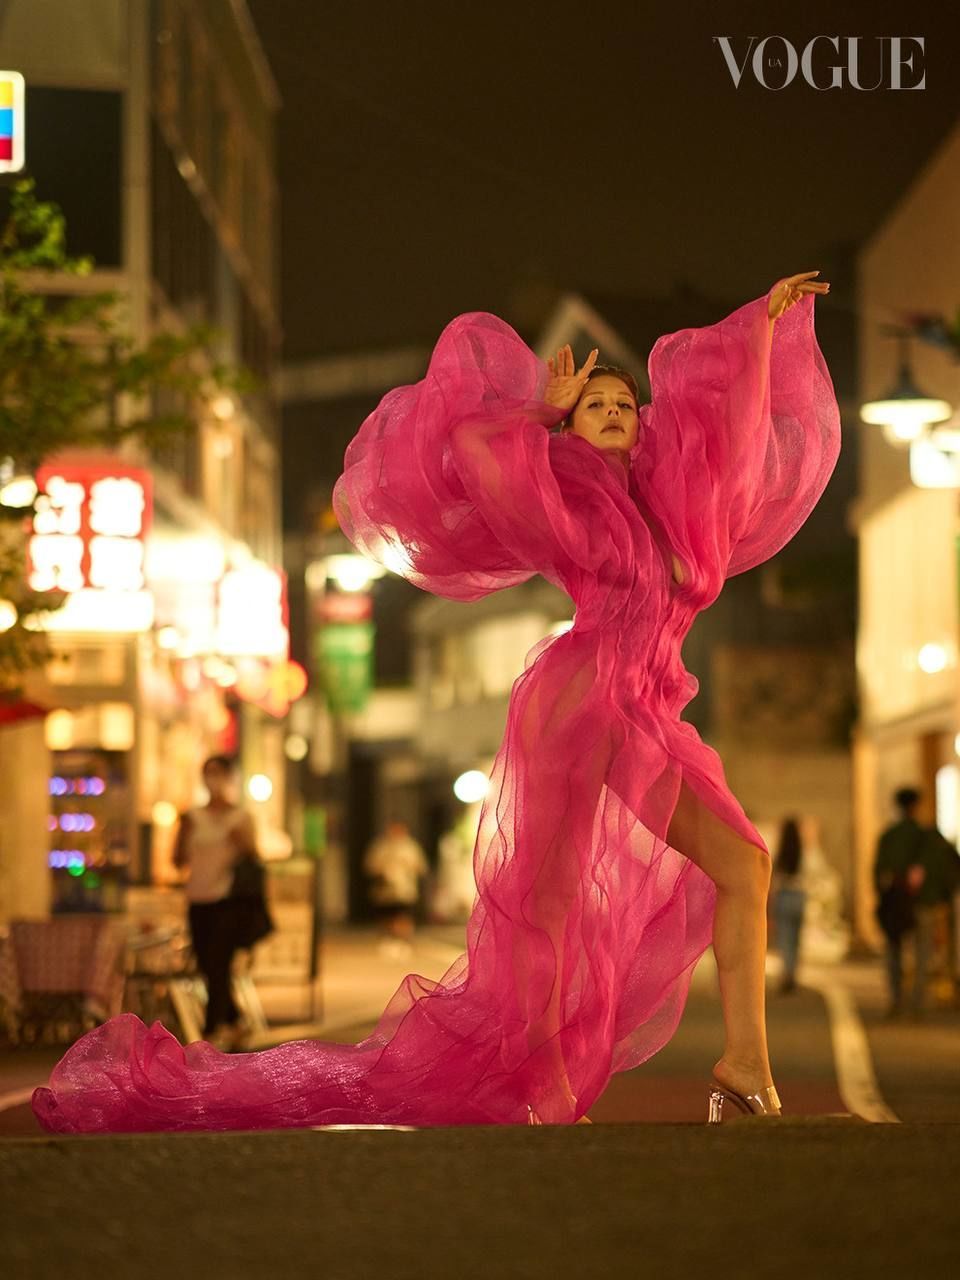 “Вот это формы“: Тина Кароль в прозрачных платьях от украинского бренда снялась на улицах Токио